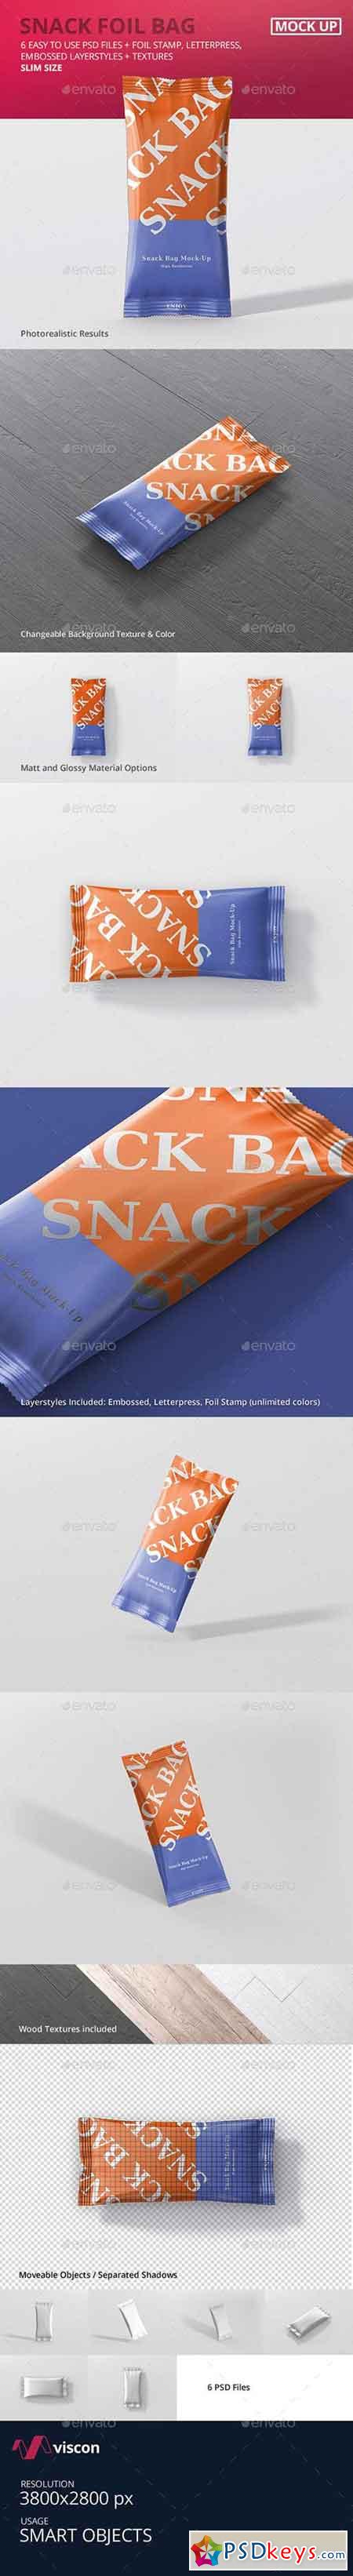 Snack Foil Bag Mockup - Slim Size 20236420